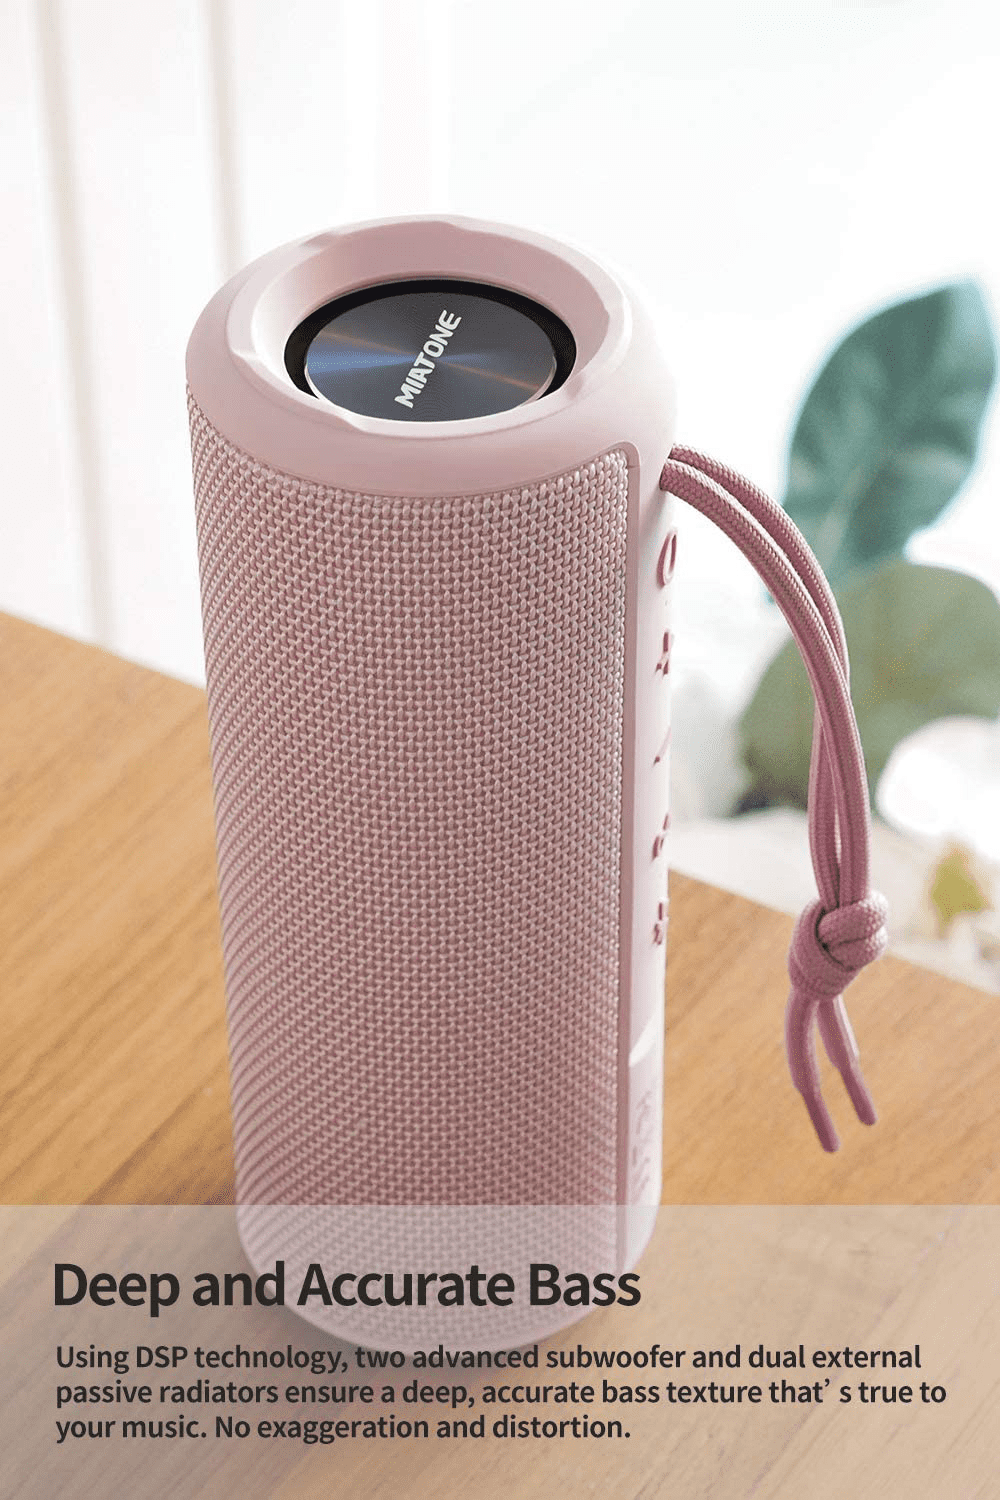 MIATONE Outdoor Portable Bluetooth Wireless Speaker (Waterproof